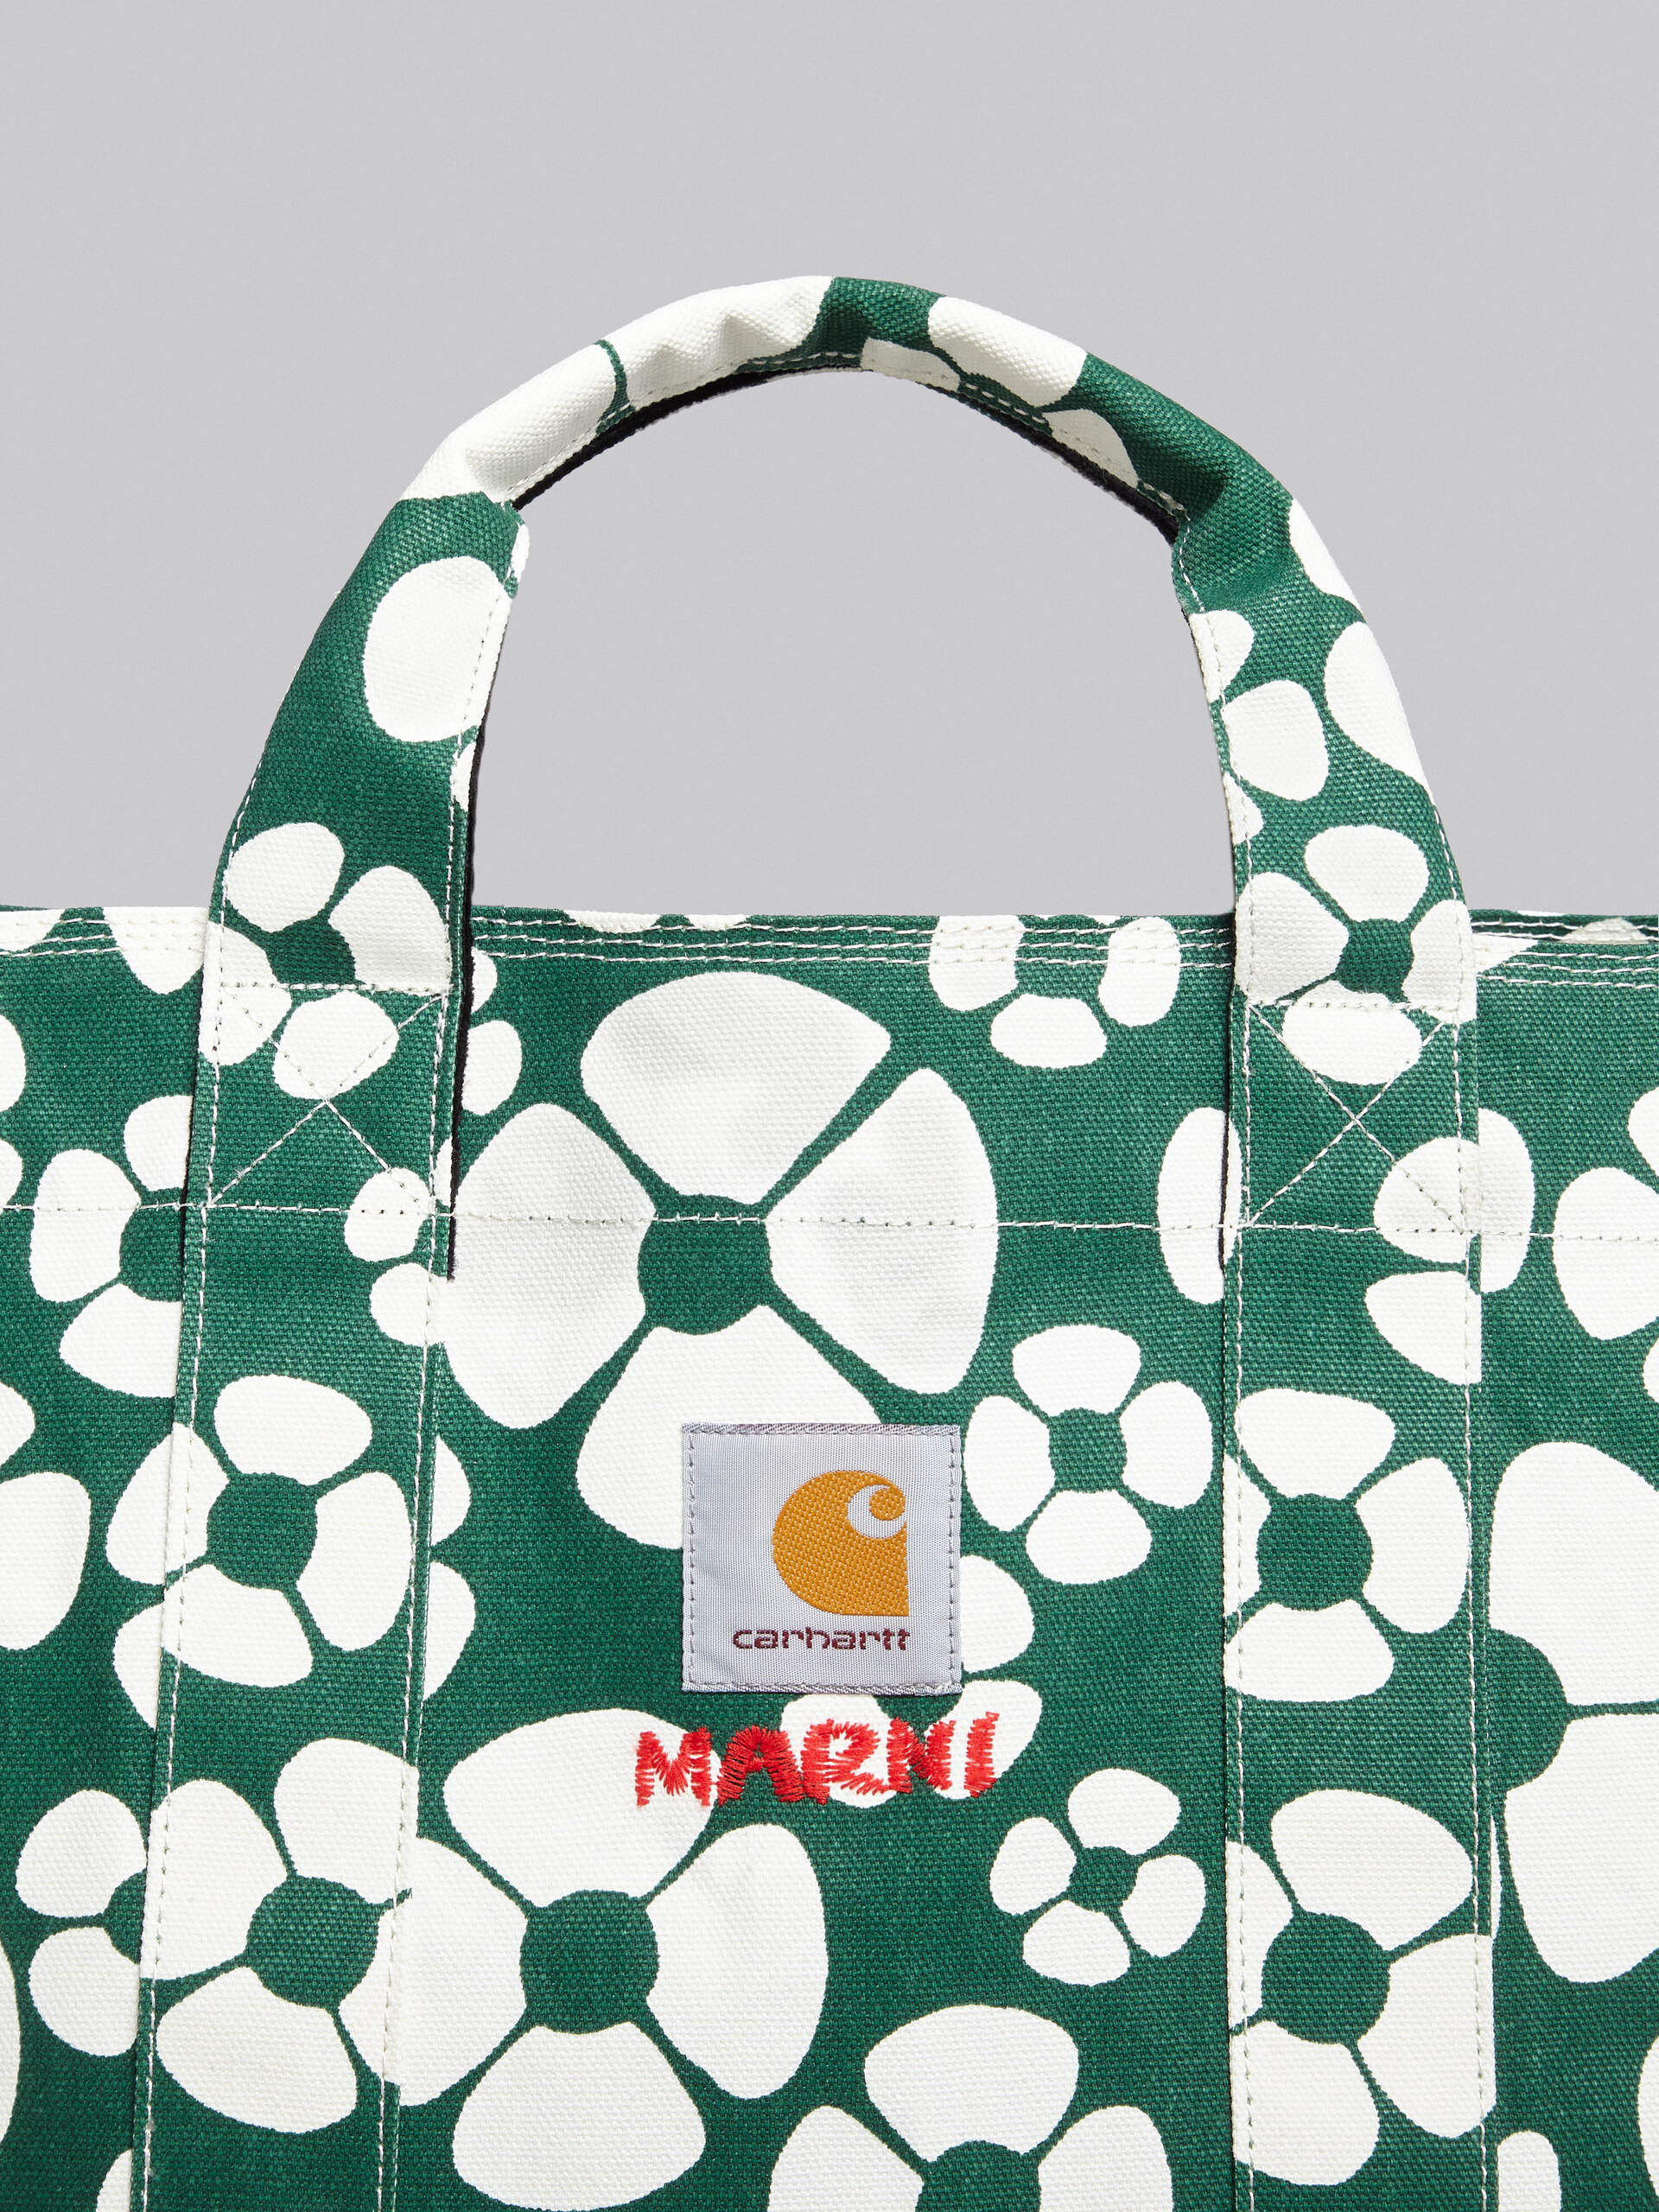 MARNI x CARHARTT WIP - green shopper | Marni